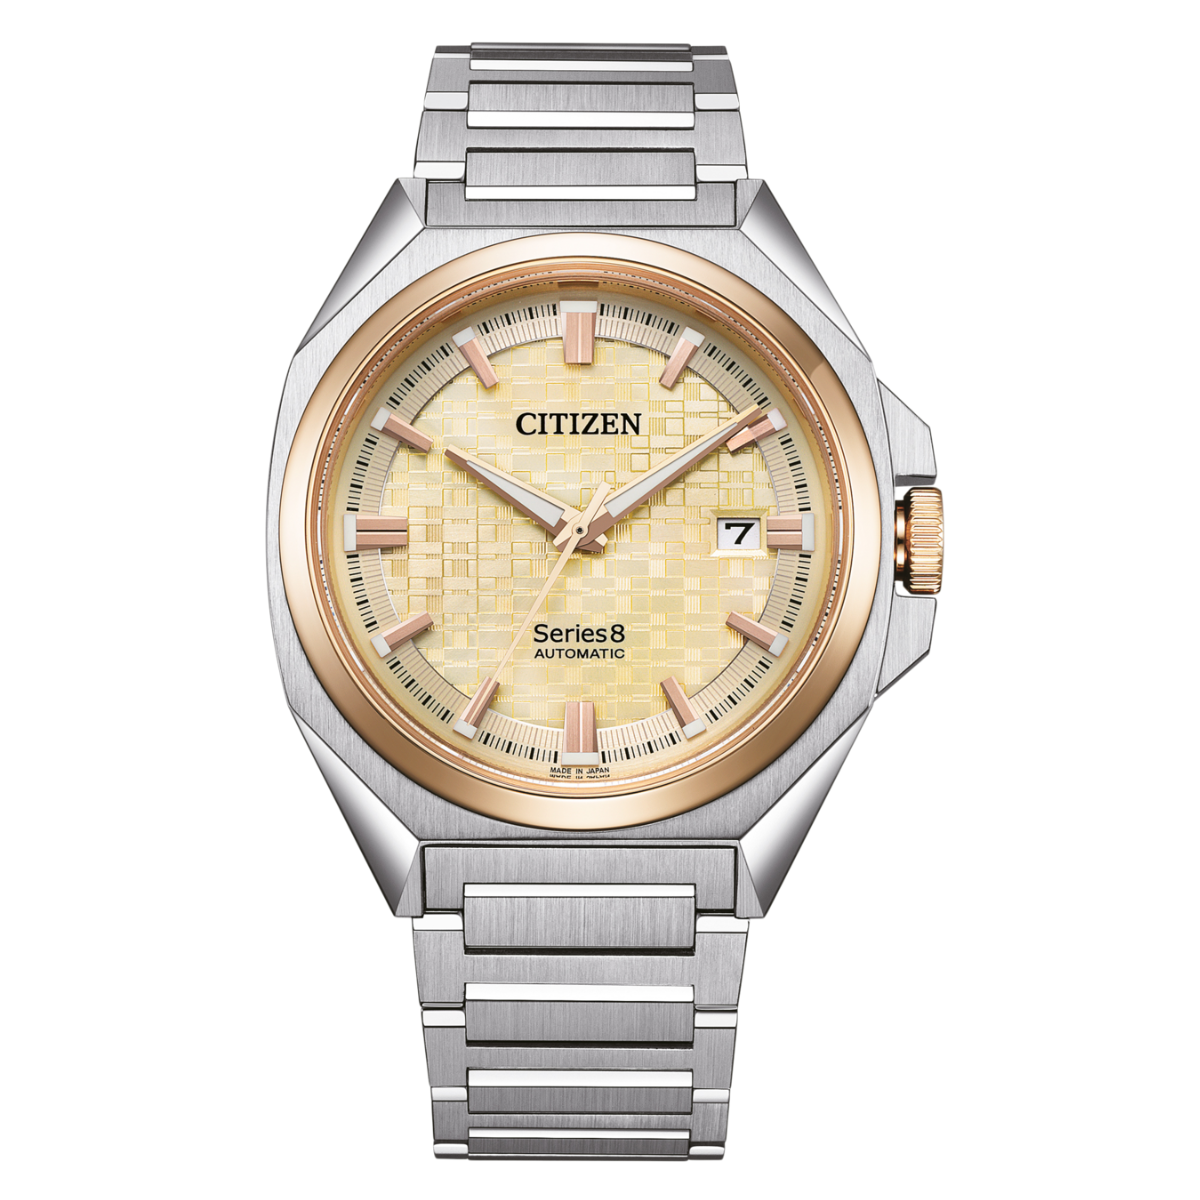 Citizen Series8 831 Automatic Men's Watch NB6059-57P